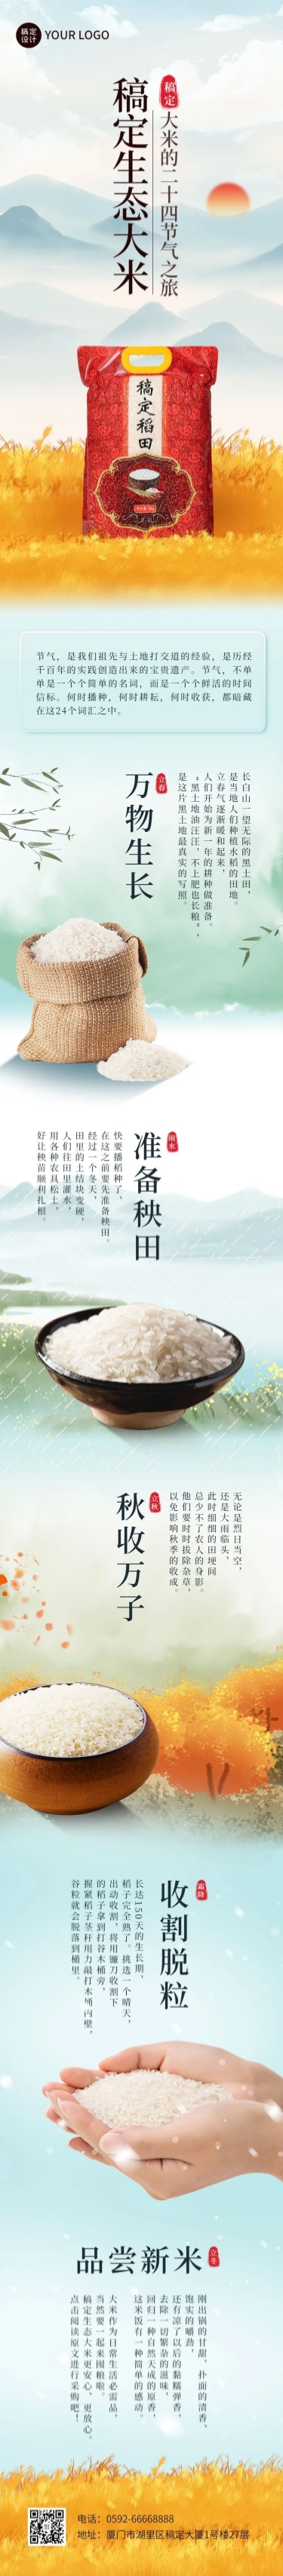 餐饮美食大米产品展示介绍促销文章长图预览效果